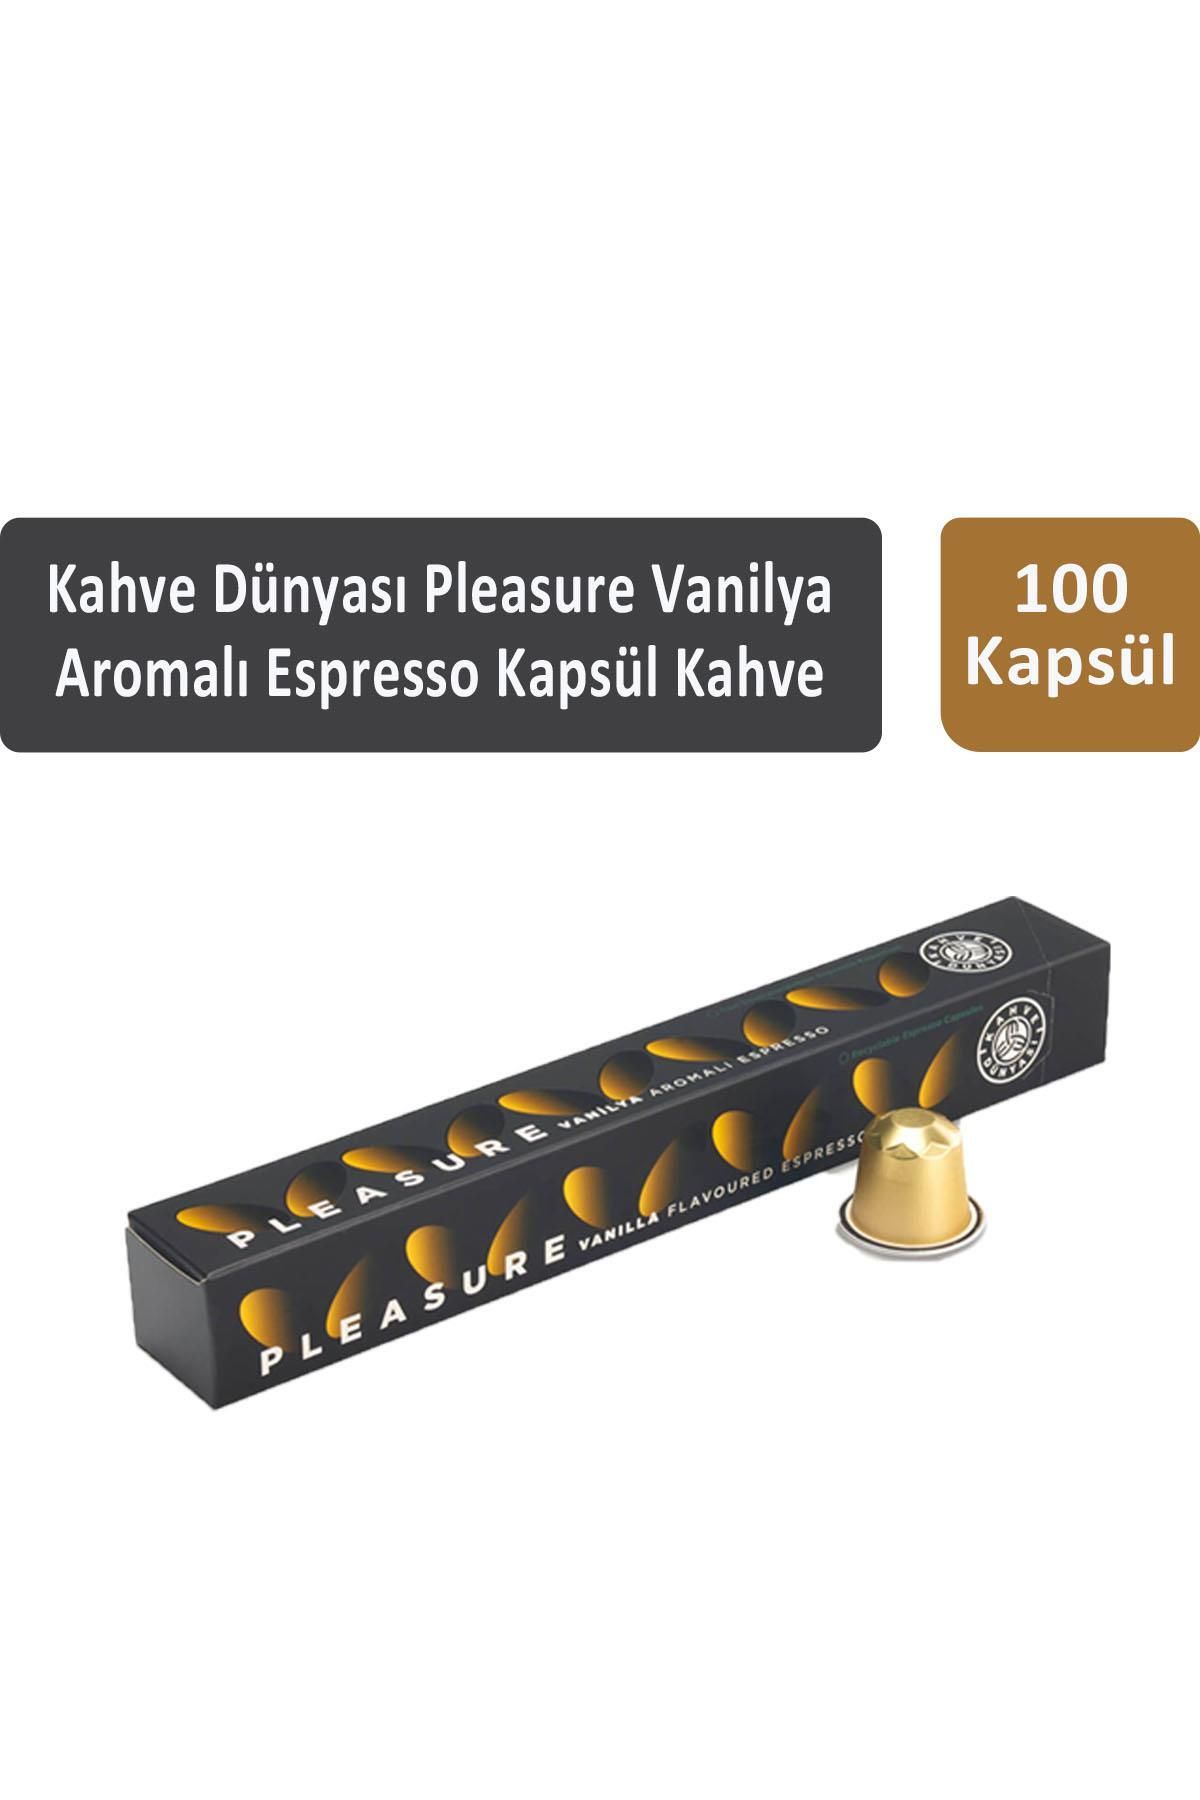 Kahve Dünyası Pleasure Vanilya Aromalı Espresso Kapsül Kahve 100 Kapsül